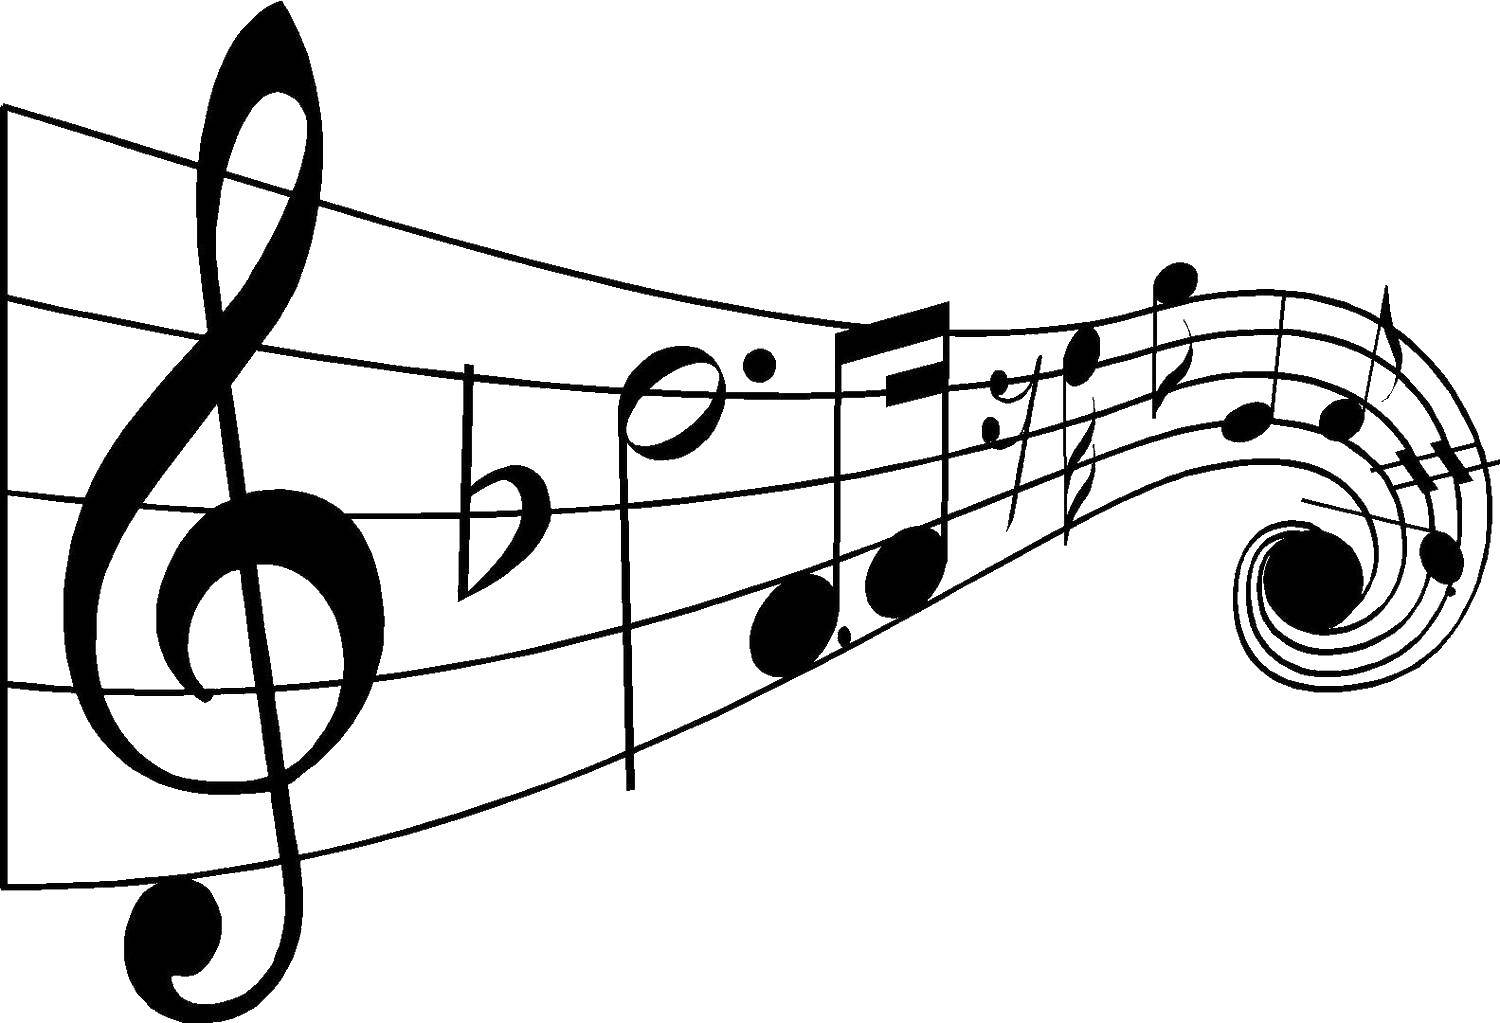 Название: Раскраска Ноты. Категория: музыка. Теги: Музыка, инструмент, музыкант, ноты.